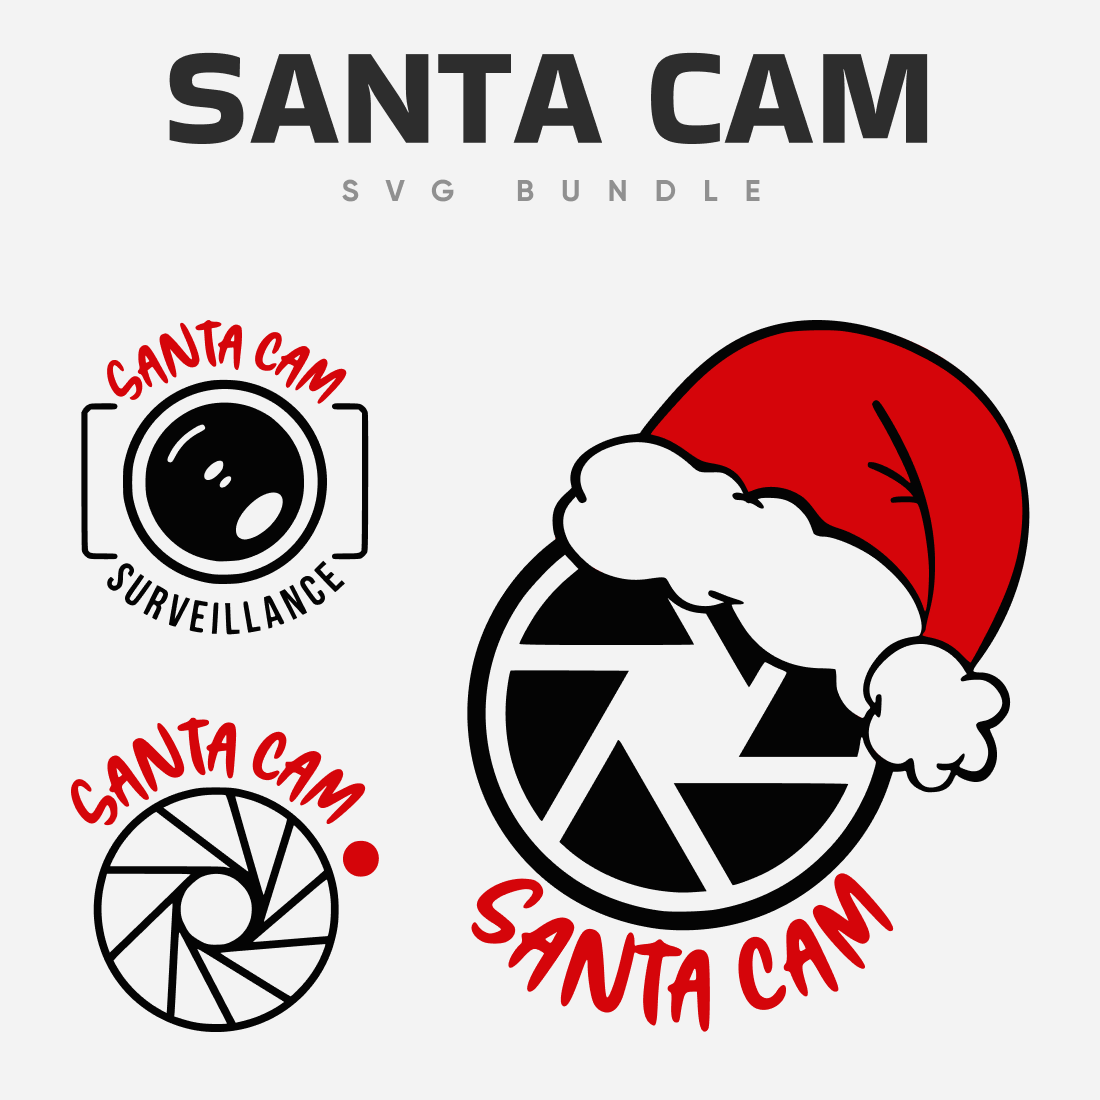 Interesting santa cam SVG bundle.